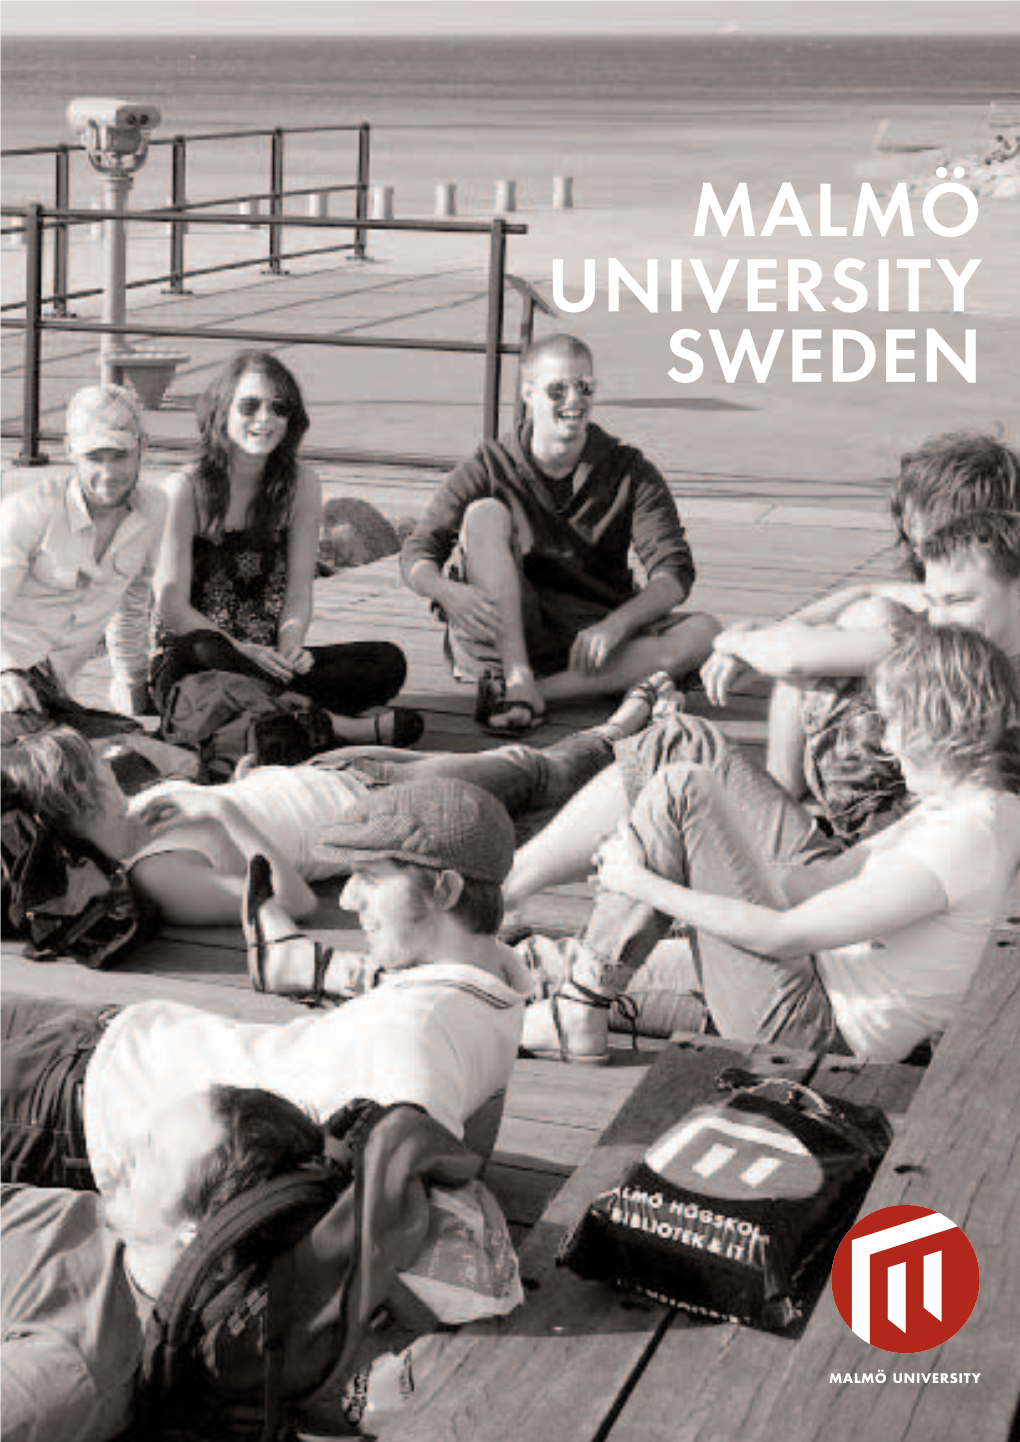 Malmö University Sweden